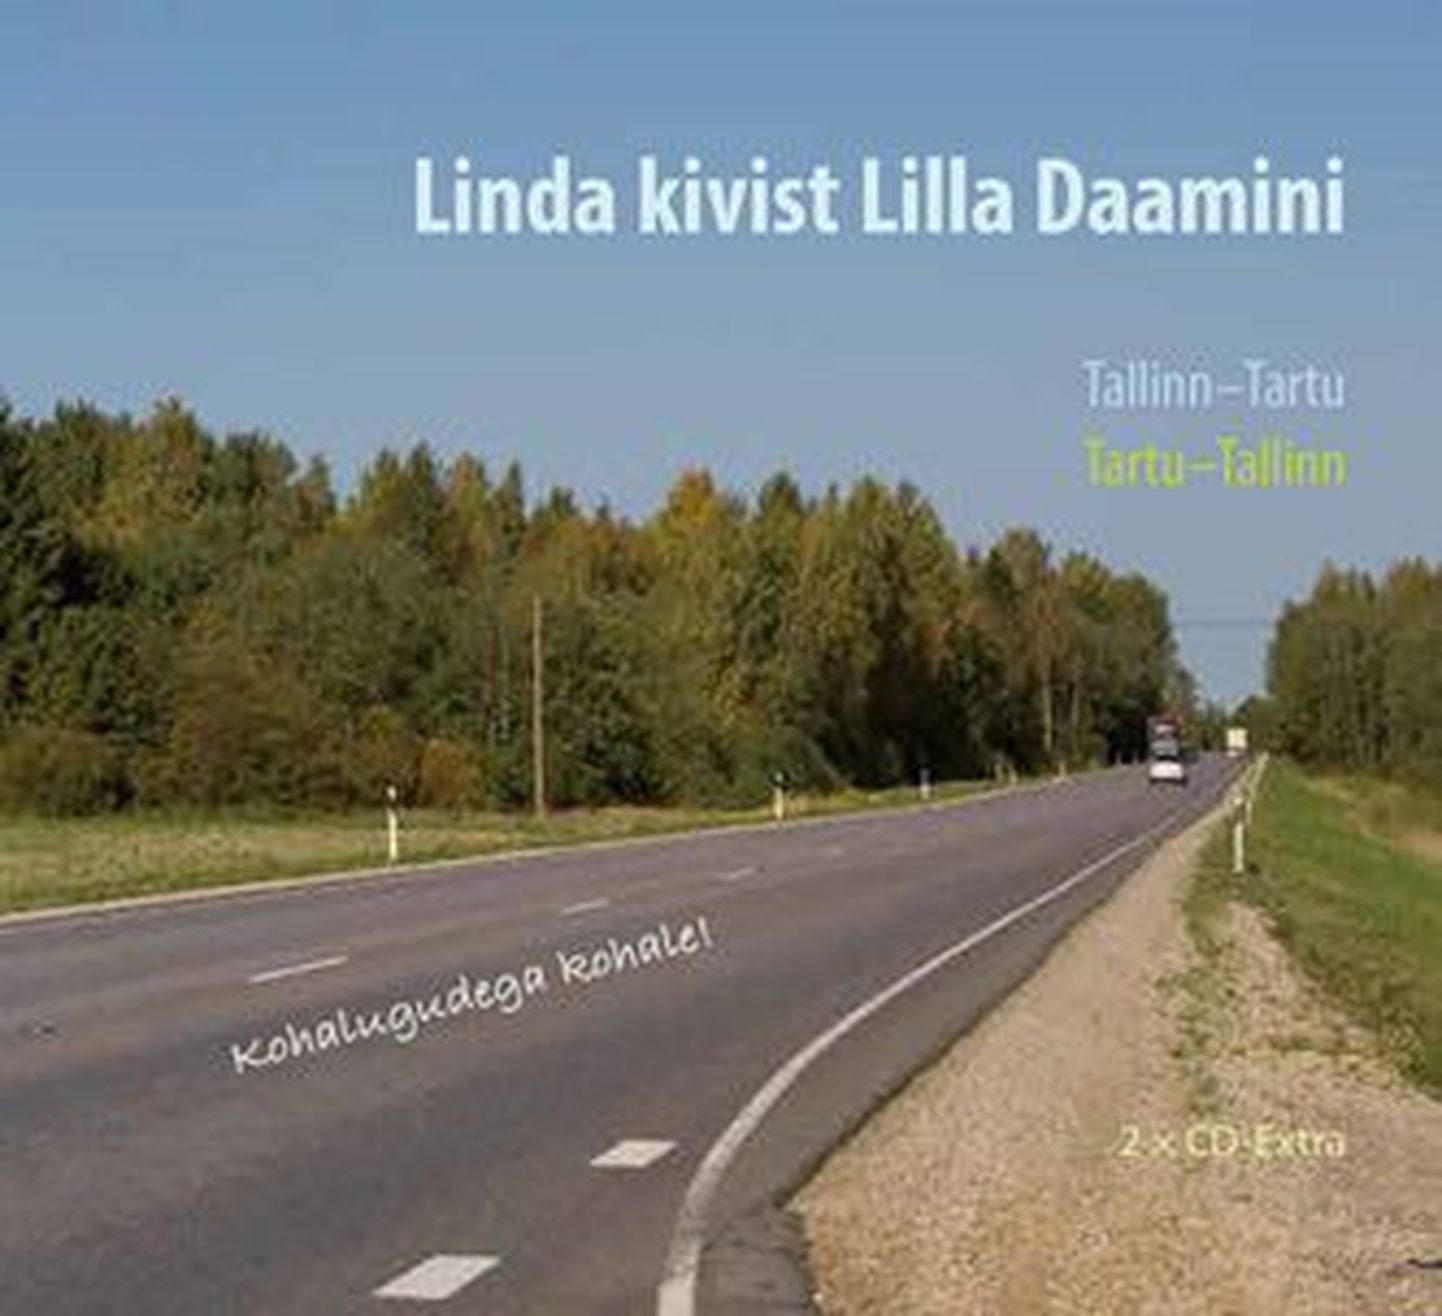 Eesti Kirjandusmuuseumi CD-duubelplaat „Linda kivist Lilla Daamini“, mis tutvustab Tartu-Tallinn maanteel reisijale kirjandusmuuseumi kogudesse kuuluvaid kohapärimusi.